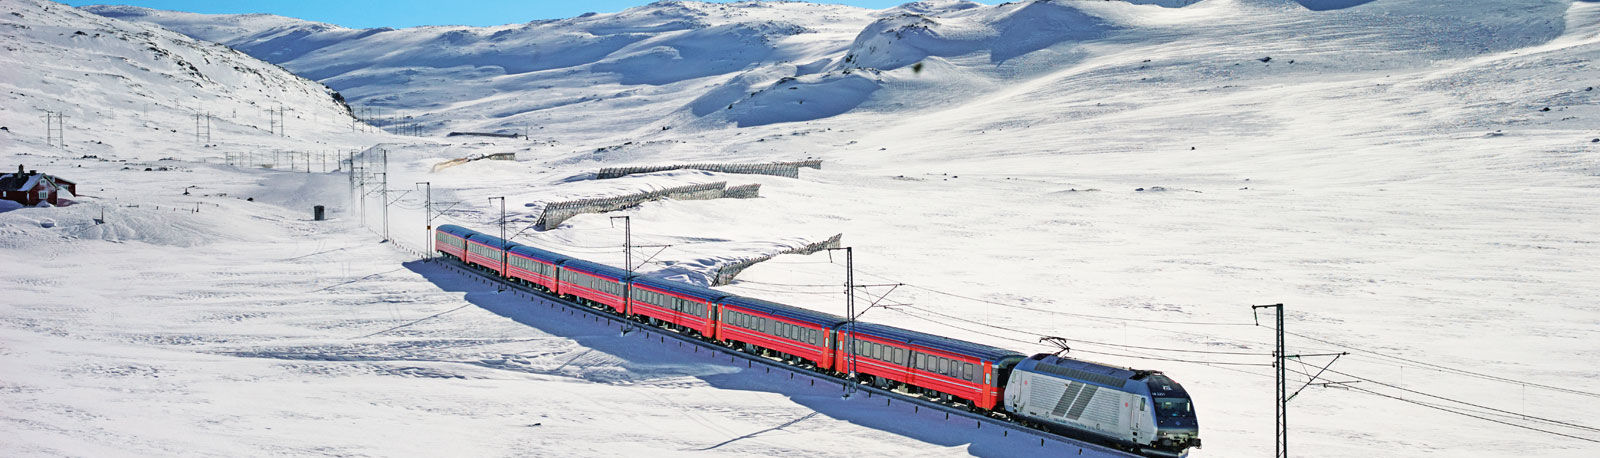 Bergbahn im Winter in Norwegen © Oivind Haug